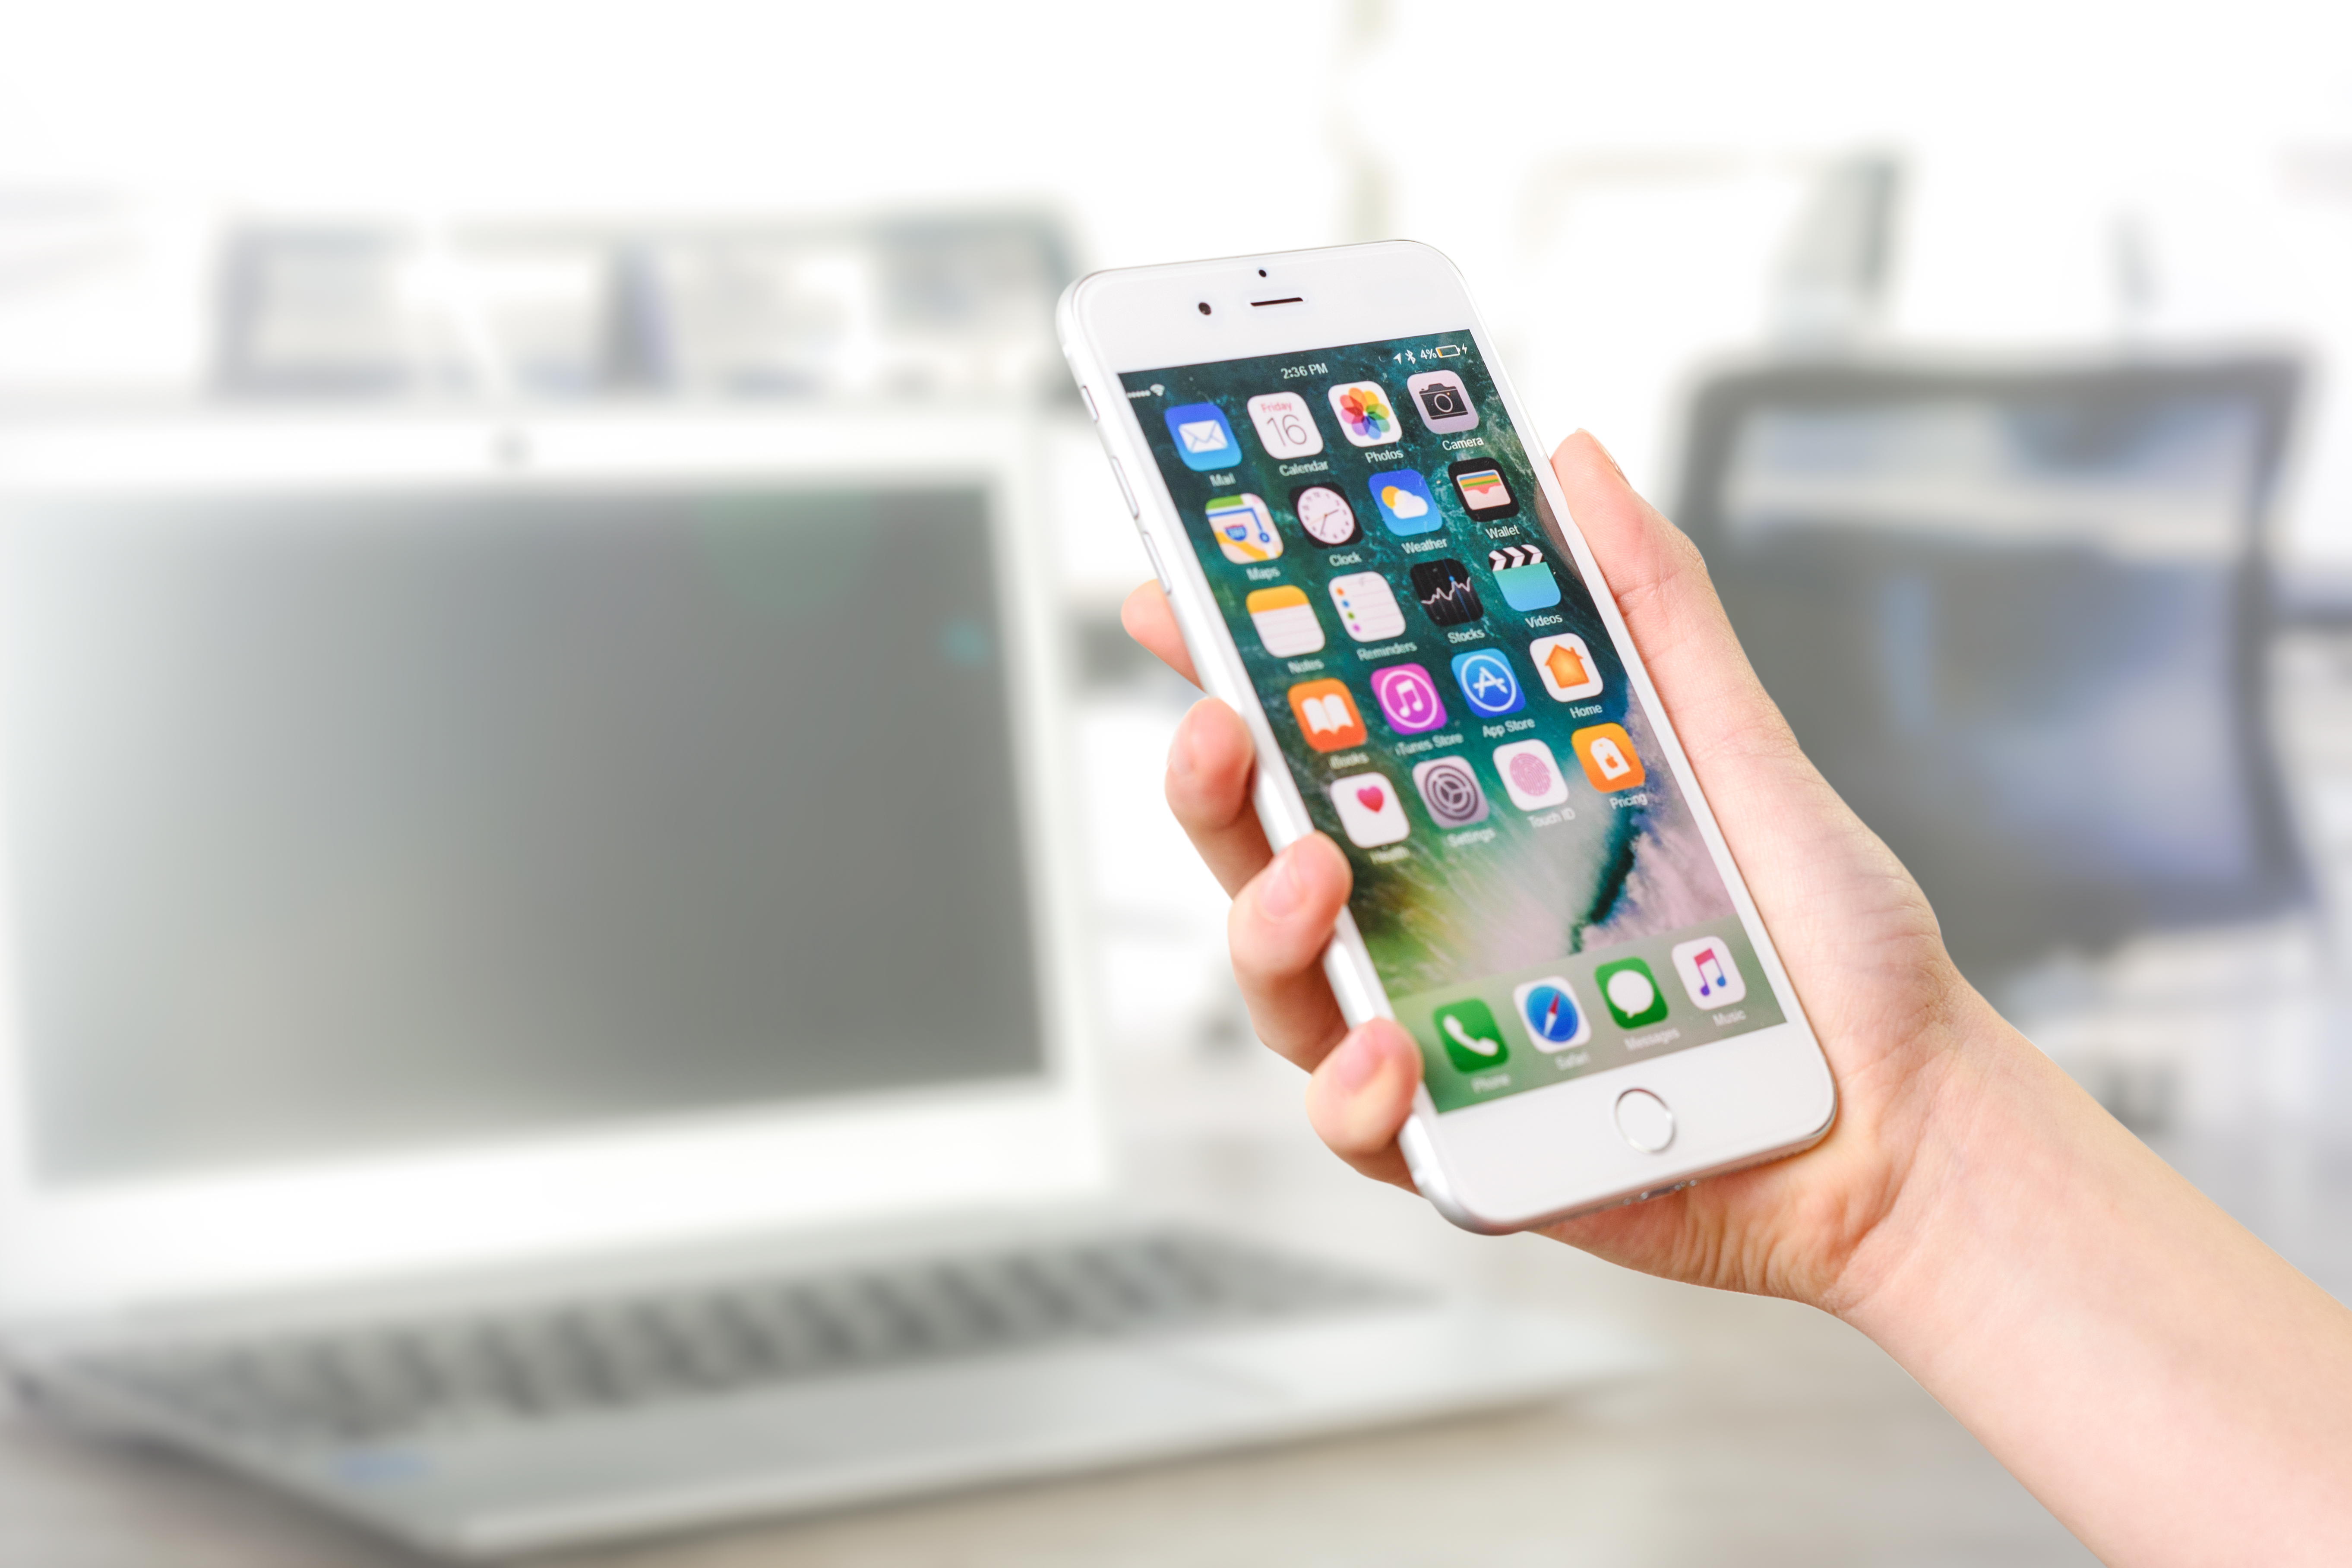  Модуль «Уведомления на мобильных устройствах» позволяет получать уведомления на мобильных устройствах под управлением iOS (iPhone, iPad) даже без подключения к серверу